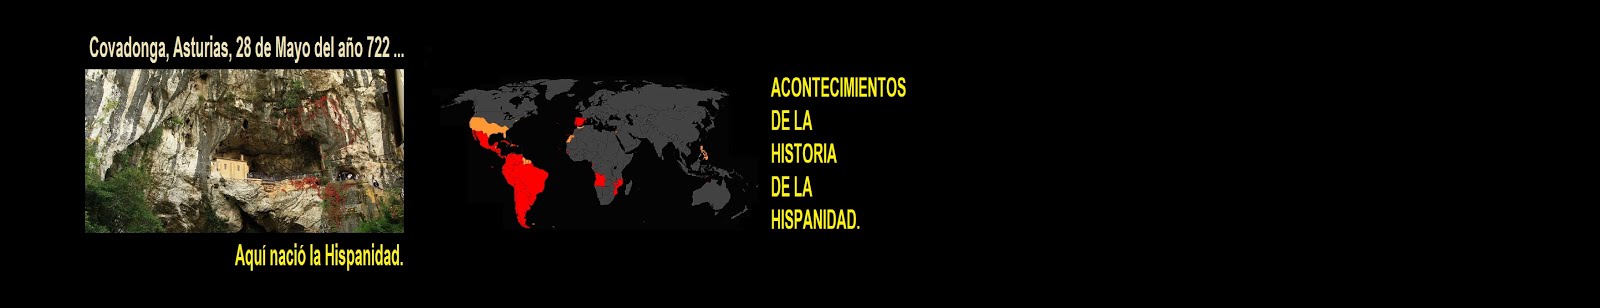 ACONTECIMIENTOS DE LA HISTORIA DE LA HISPANIDAD